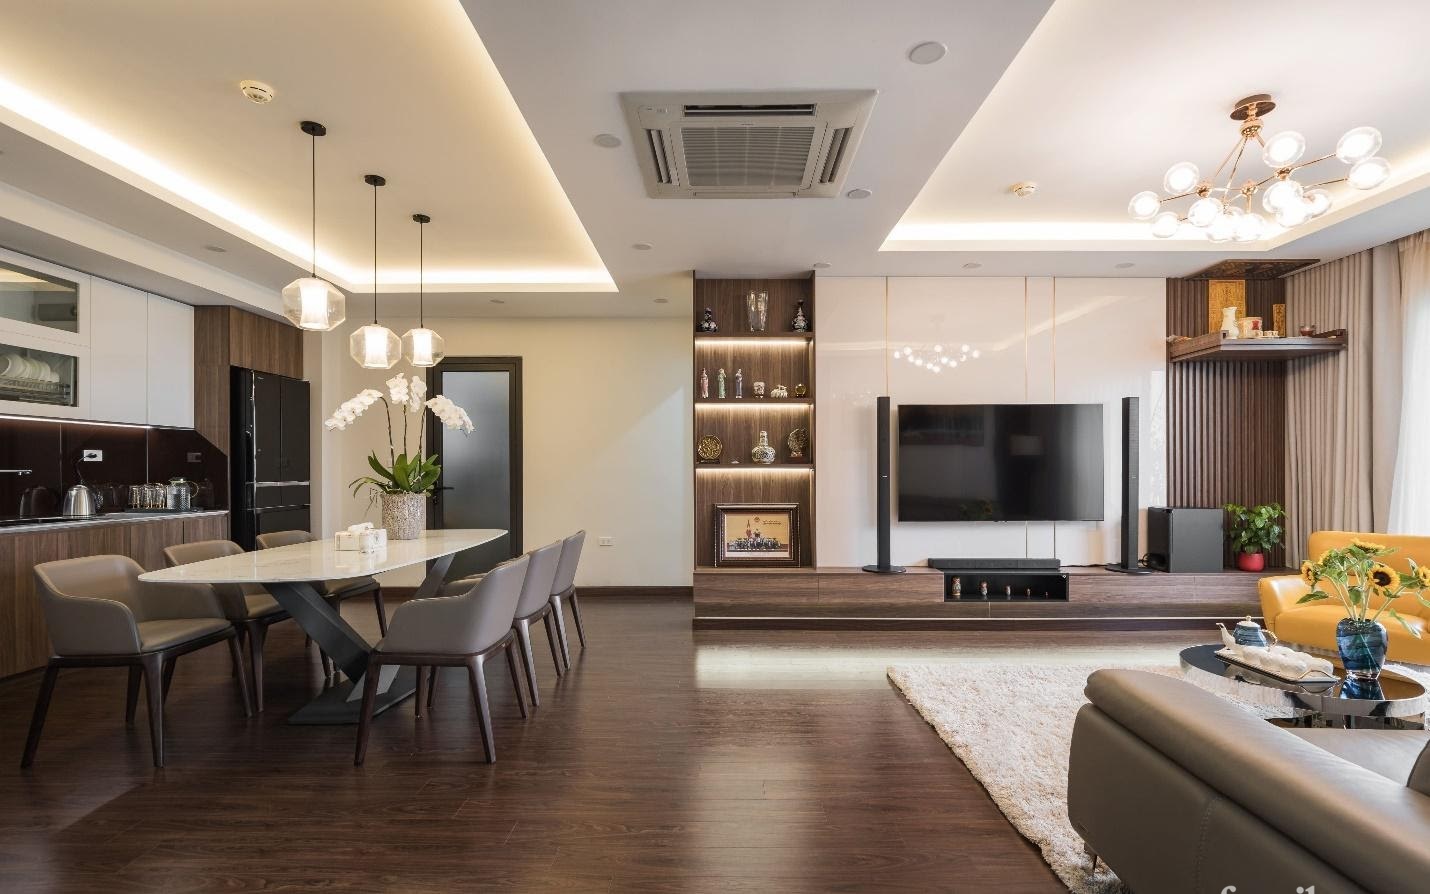 Sự hiện đại và tiện nghi đến từng chi tiết bên trong căn hộ rộng 120m² tại Hà Nội - Ảnh 6.